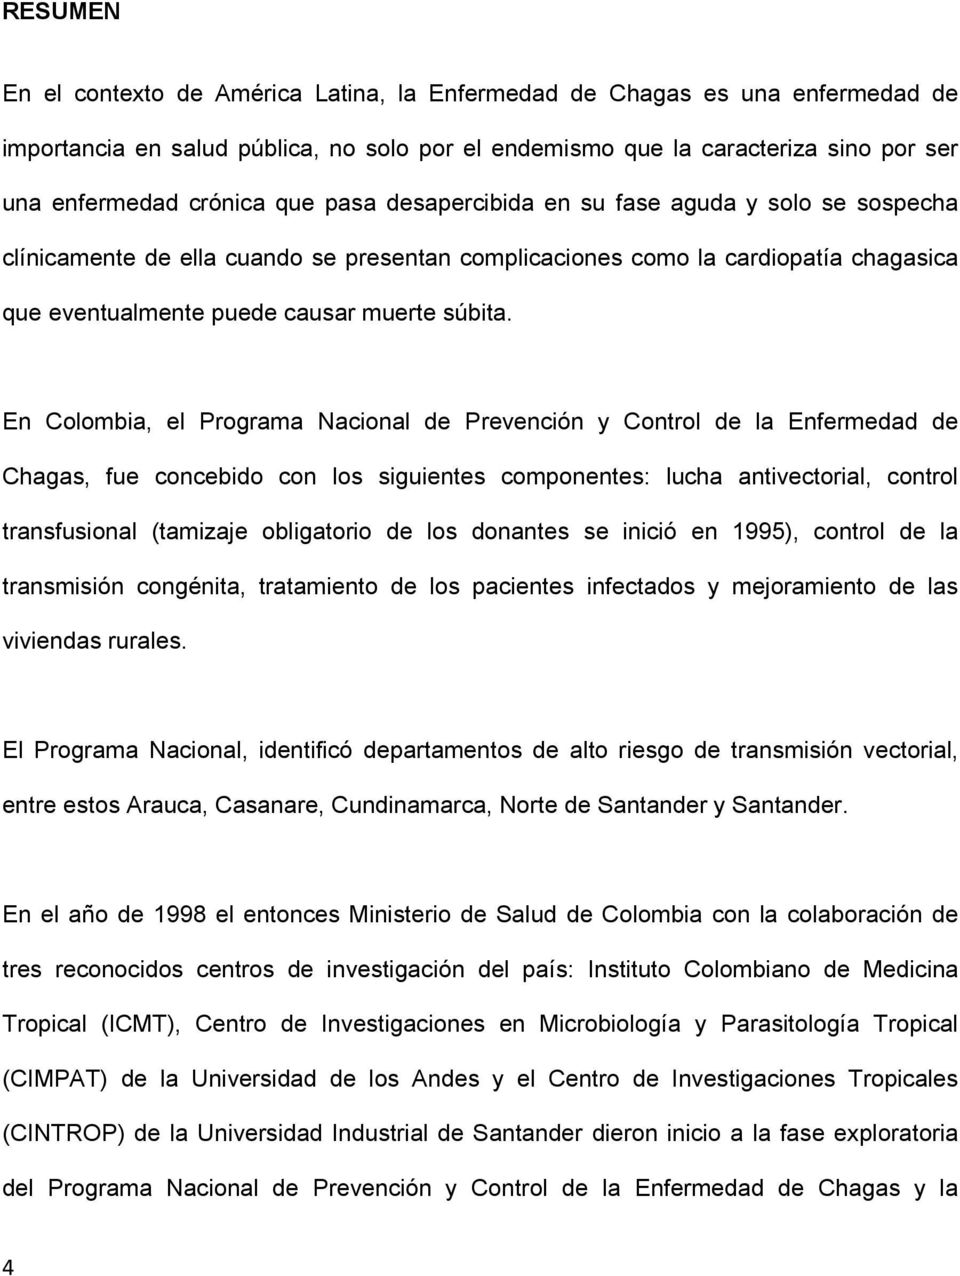 En Colombia, el Programa Nacional de Prevención y Control de la Enfermedad de Chagas, fue concebido con los siguientes componentes: lucha antivectorial, control transfusional (tamizaje obligatorio de